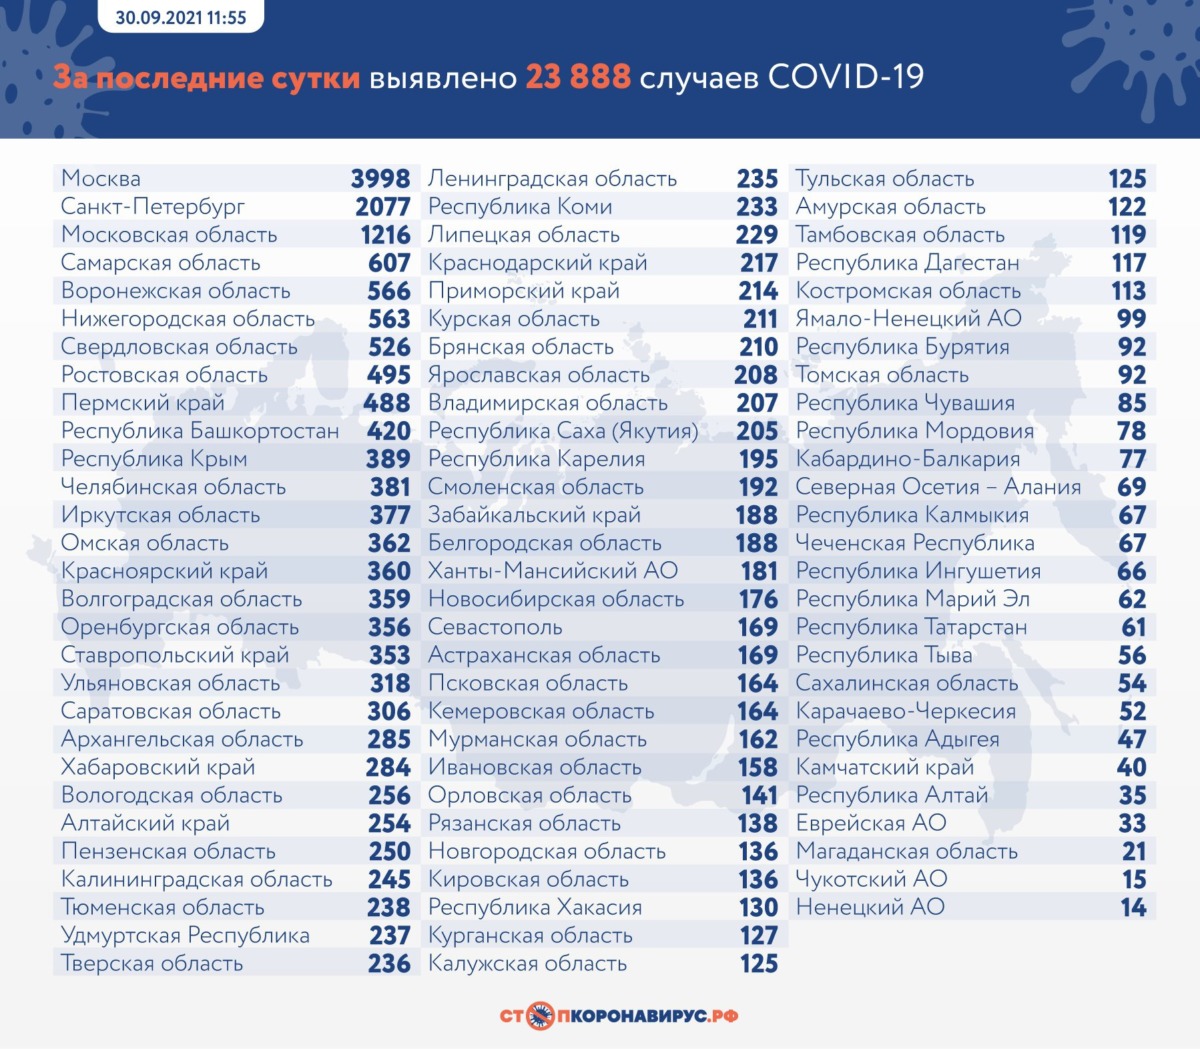 Очередной антирекорд по смертям от коронавируса в России на 30 сентября